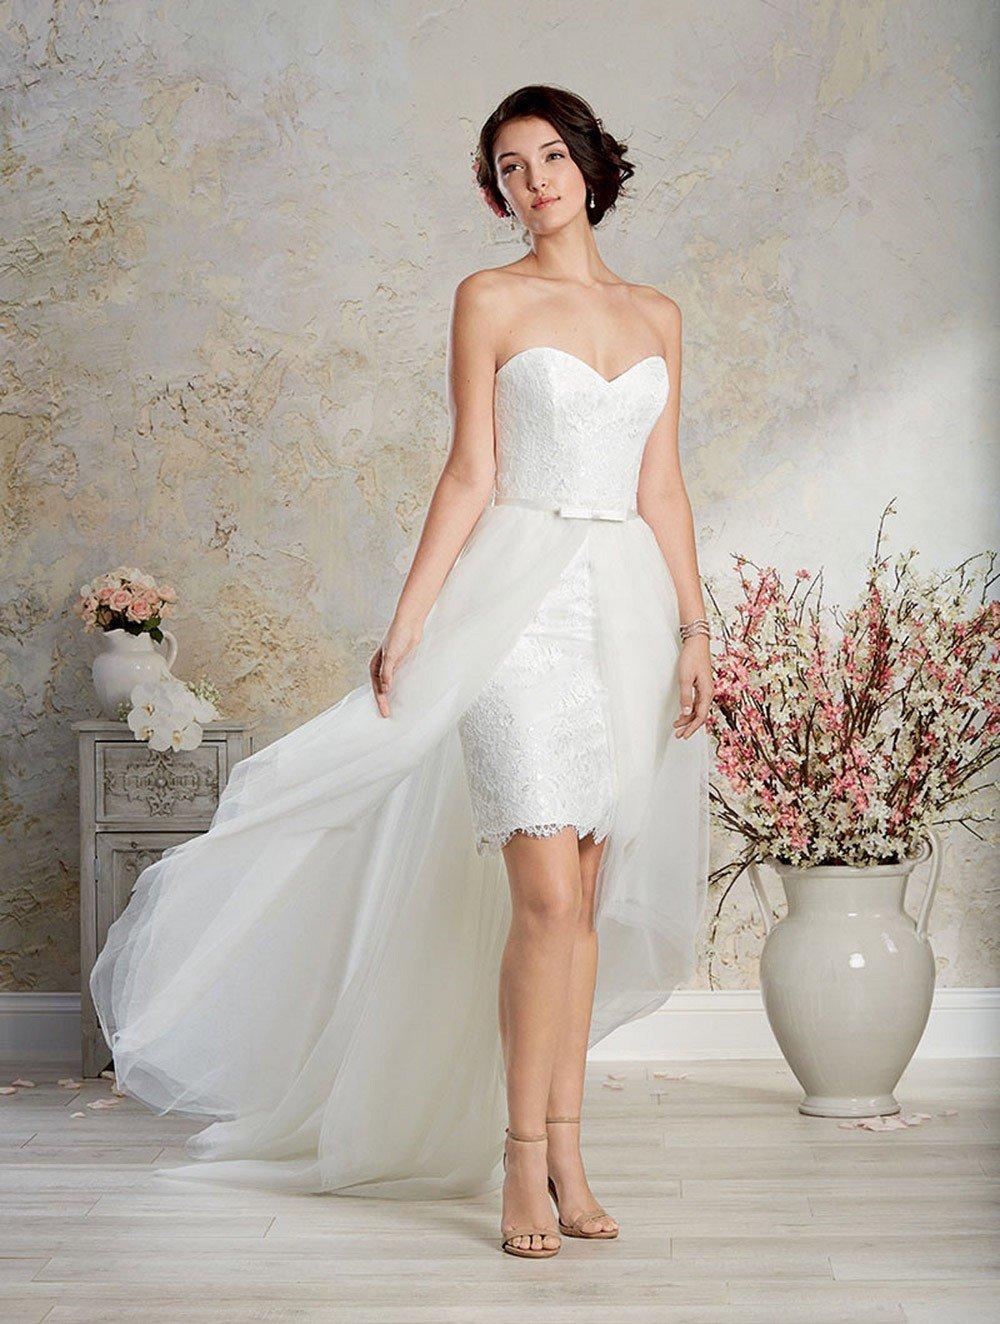 Mon Cheri | Dresses | Never Worn Skirt Overlay From Wedding Dress Only Overlay  Skirt For Sale | Poshmark